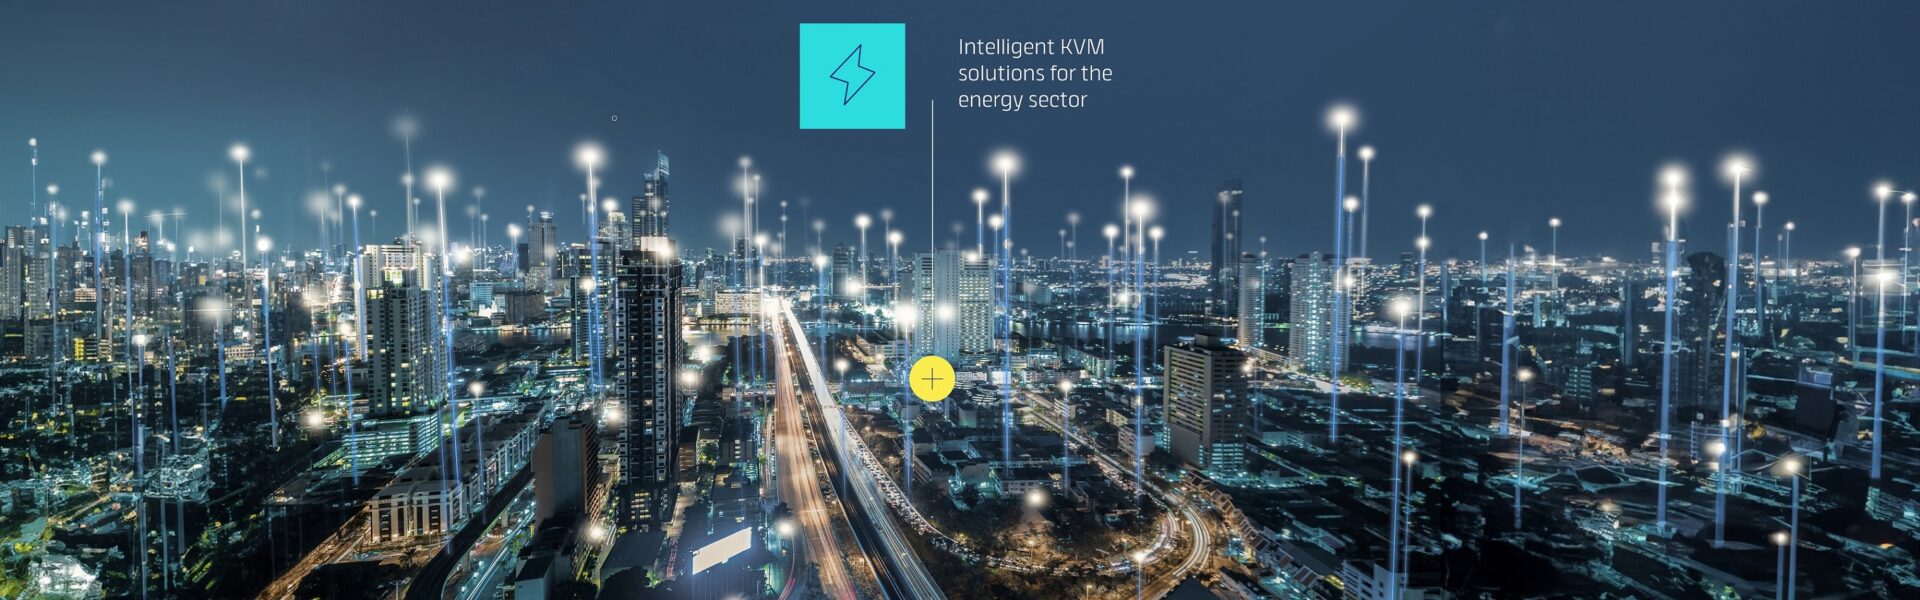 Intelligente KVM-Lösungen für sichere und zuverlässige Energiekontrollräume